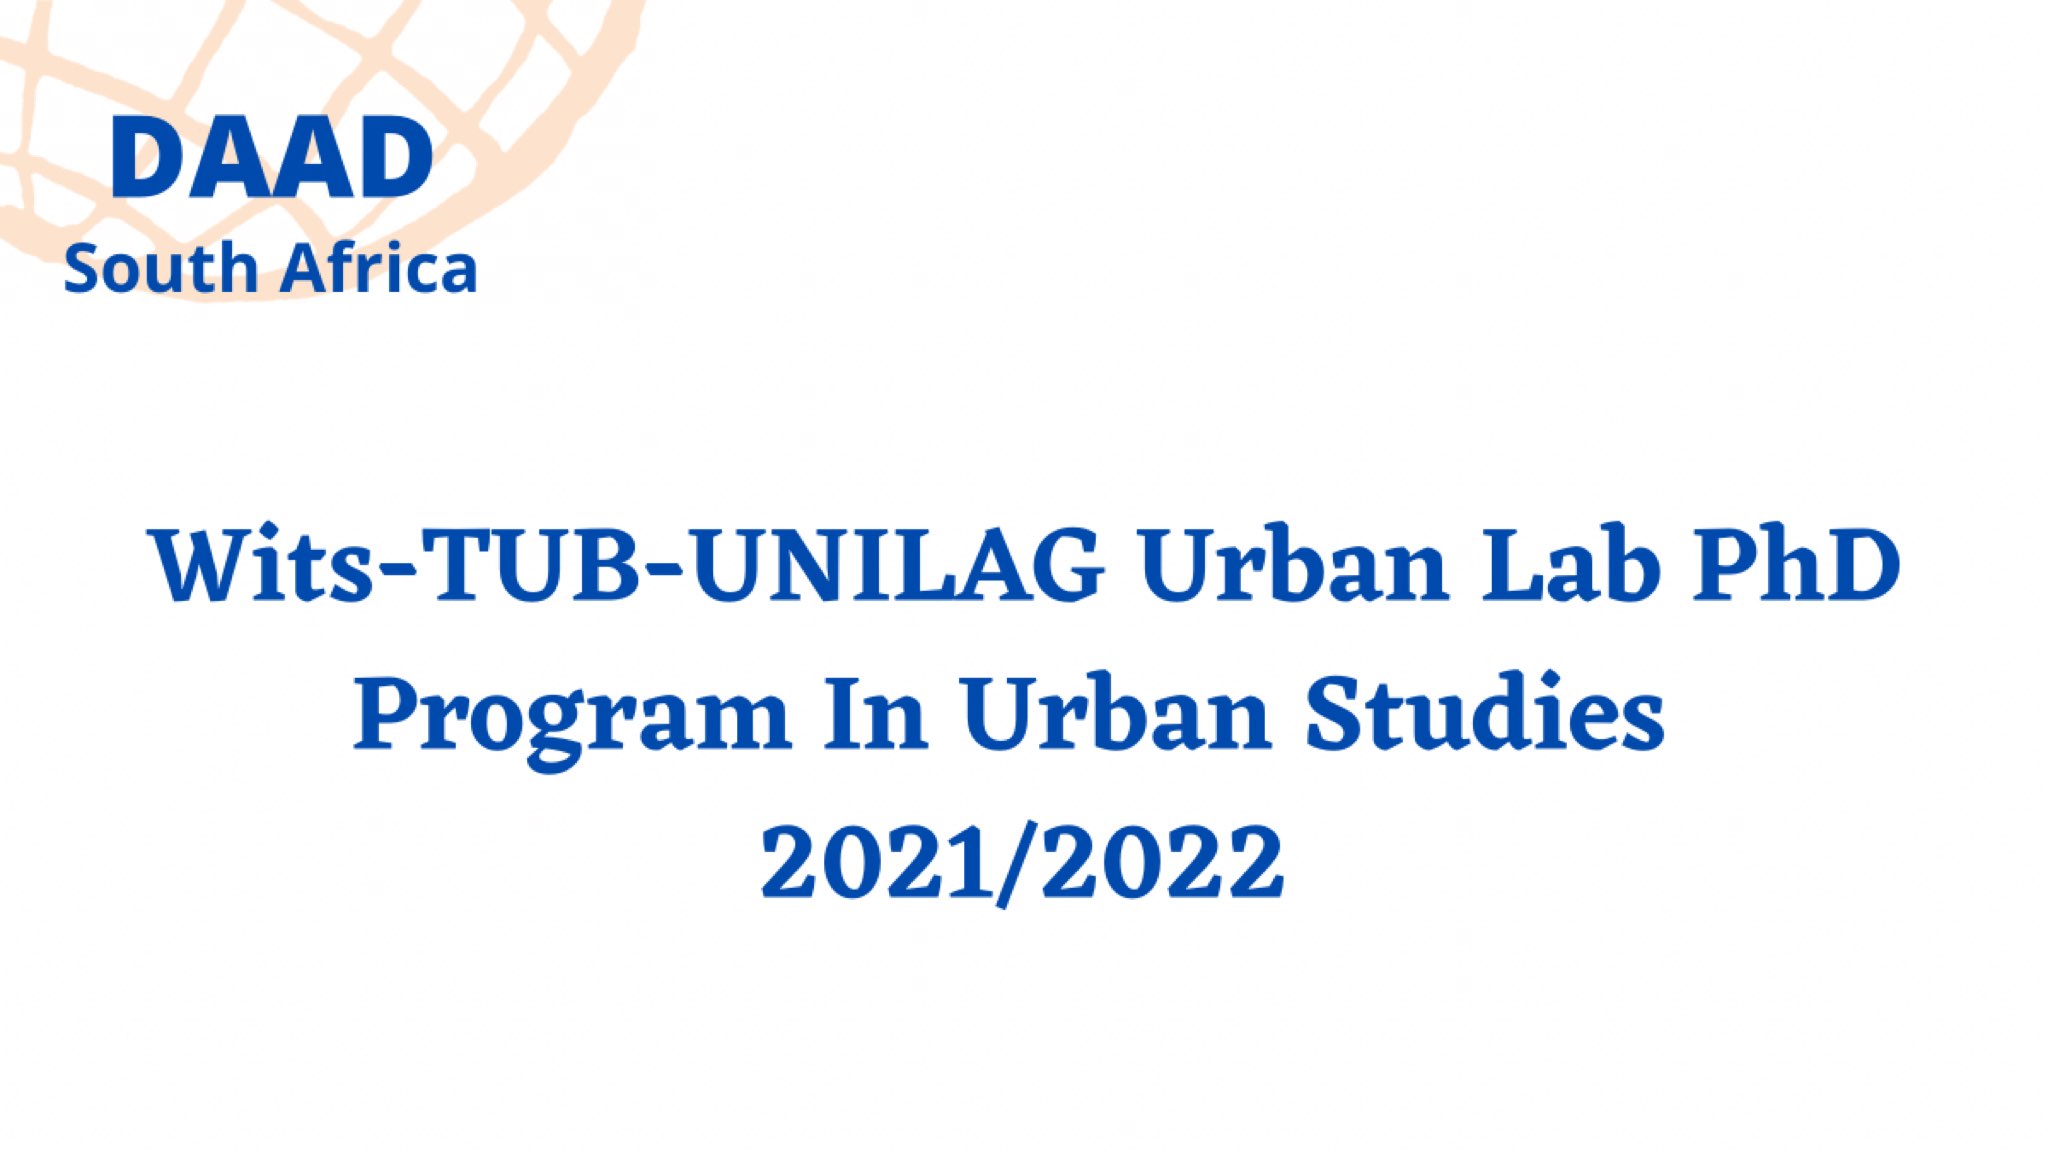 Wits-TUB-UNILAG Urban Lab PhD Program